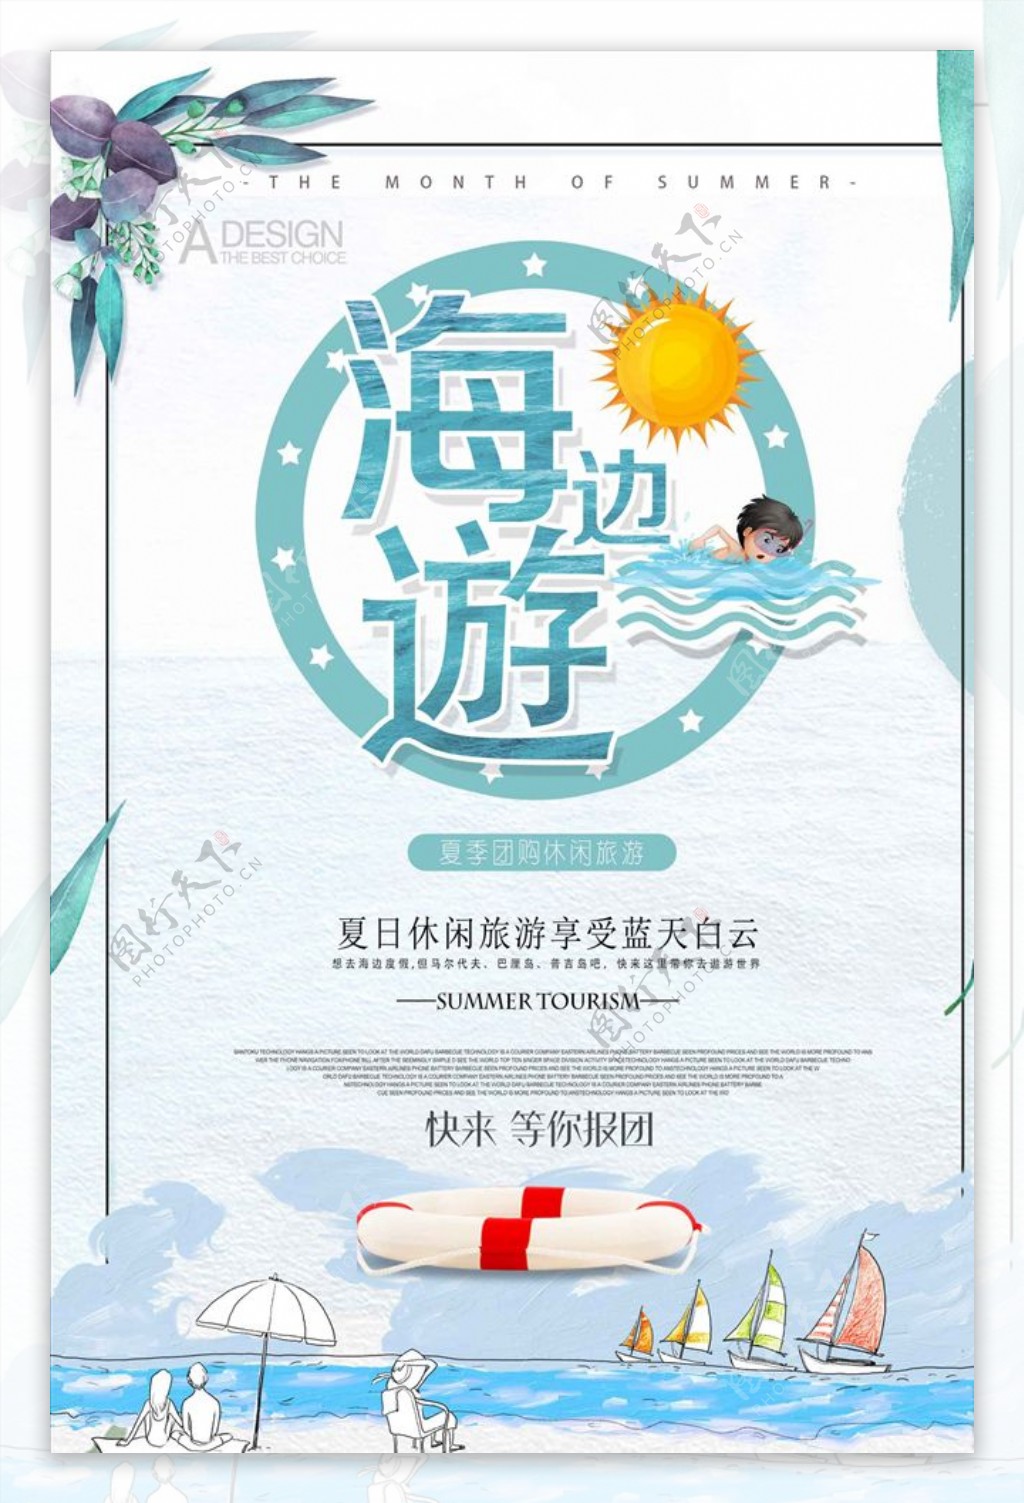 夏季旅游海边游促销宣传海报